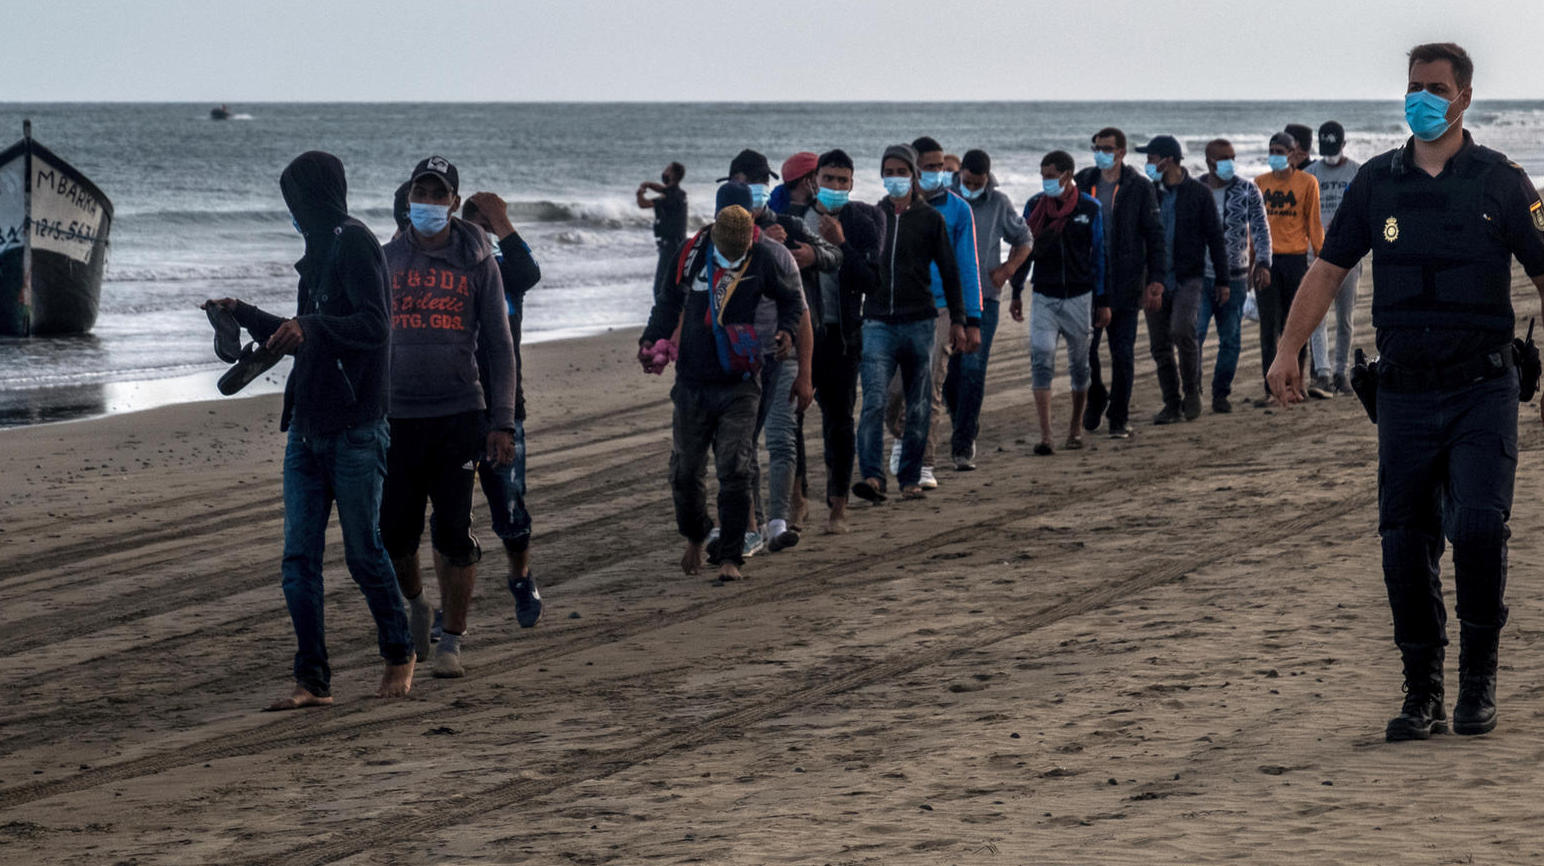 Der nächste Hotspot für kanarische Flüchtlinge in Europa?